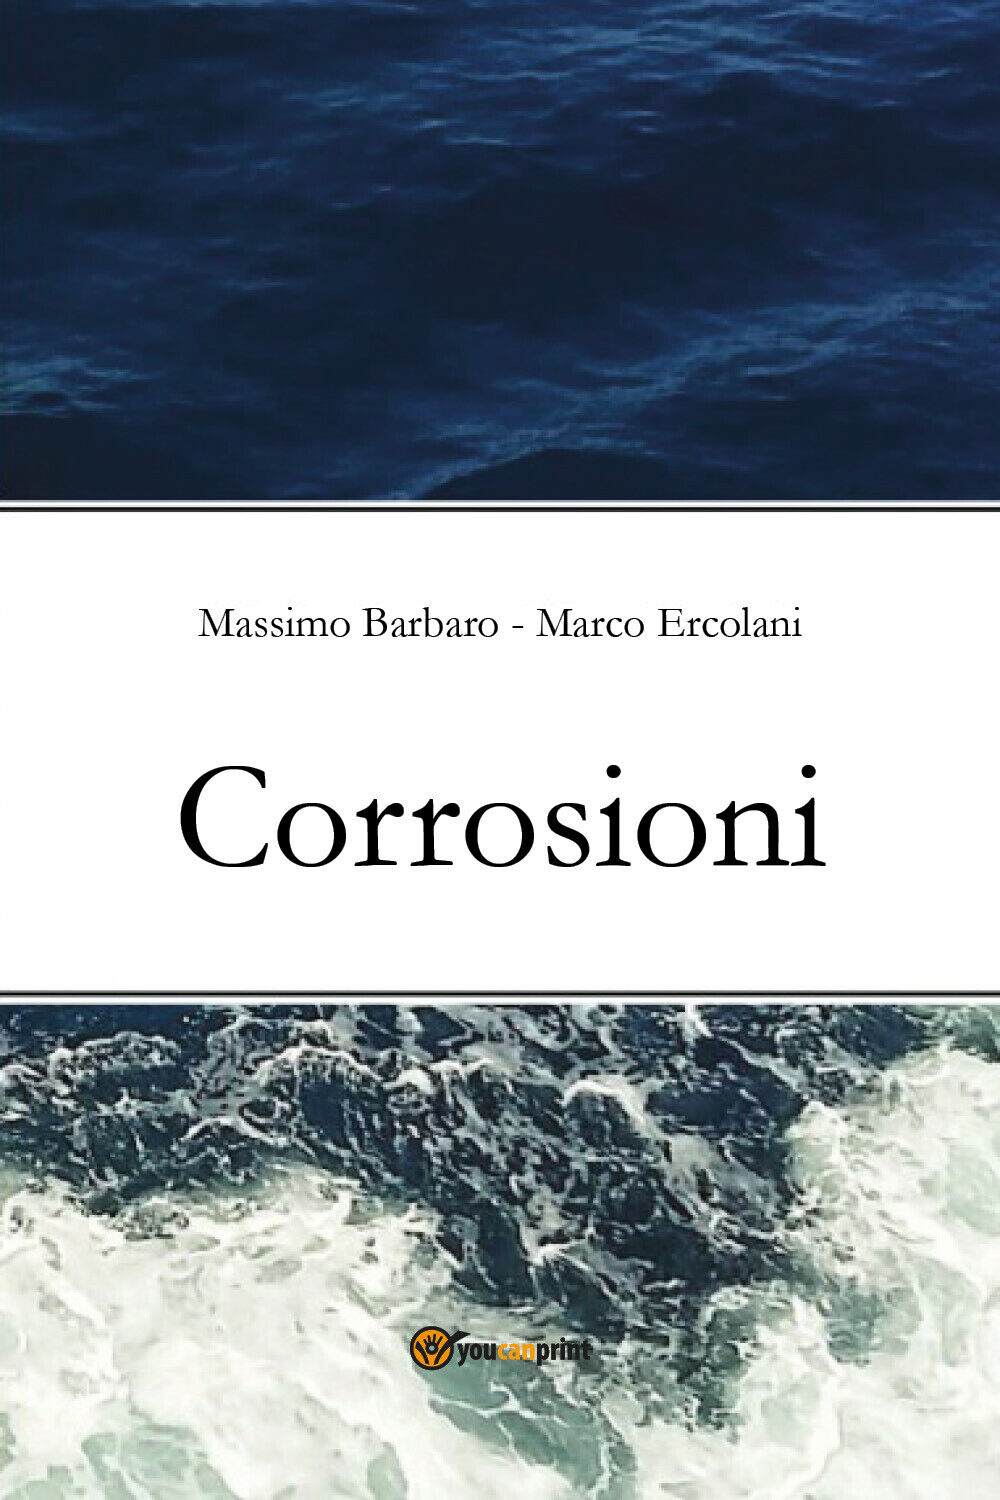 Corrosioni di Massimo Barbaro, Marco Ercolani,  2021,  Youcanprint